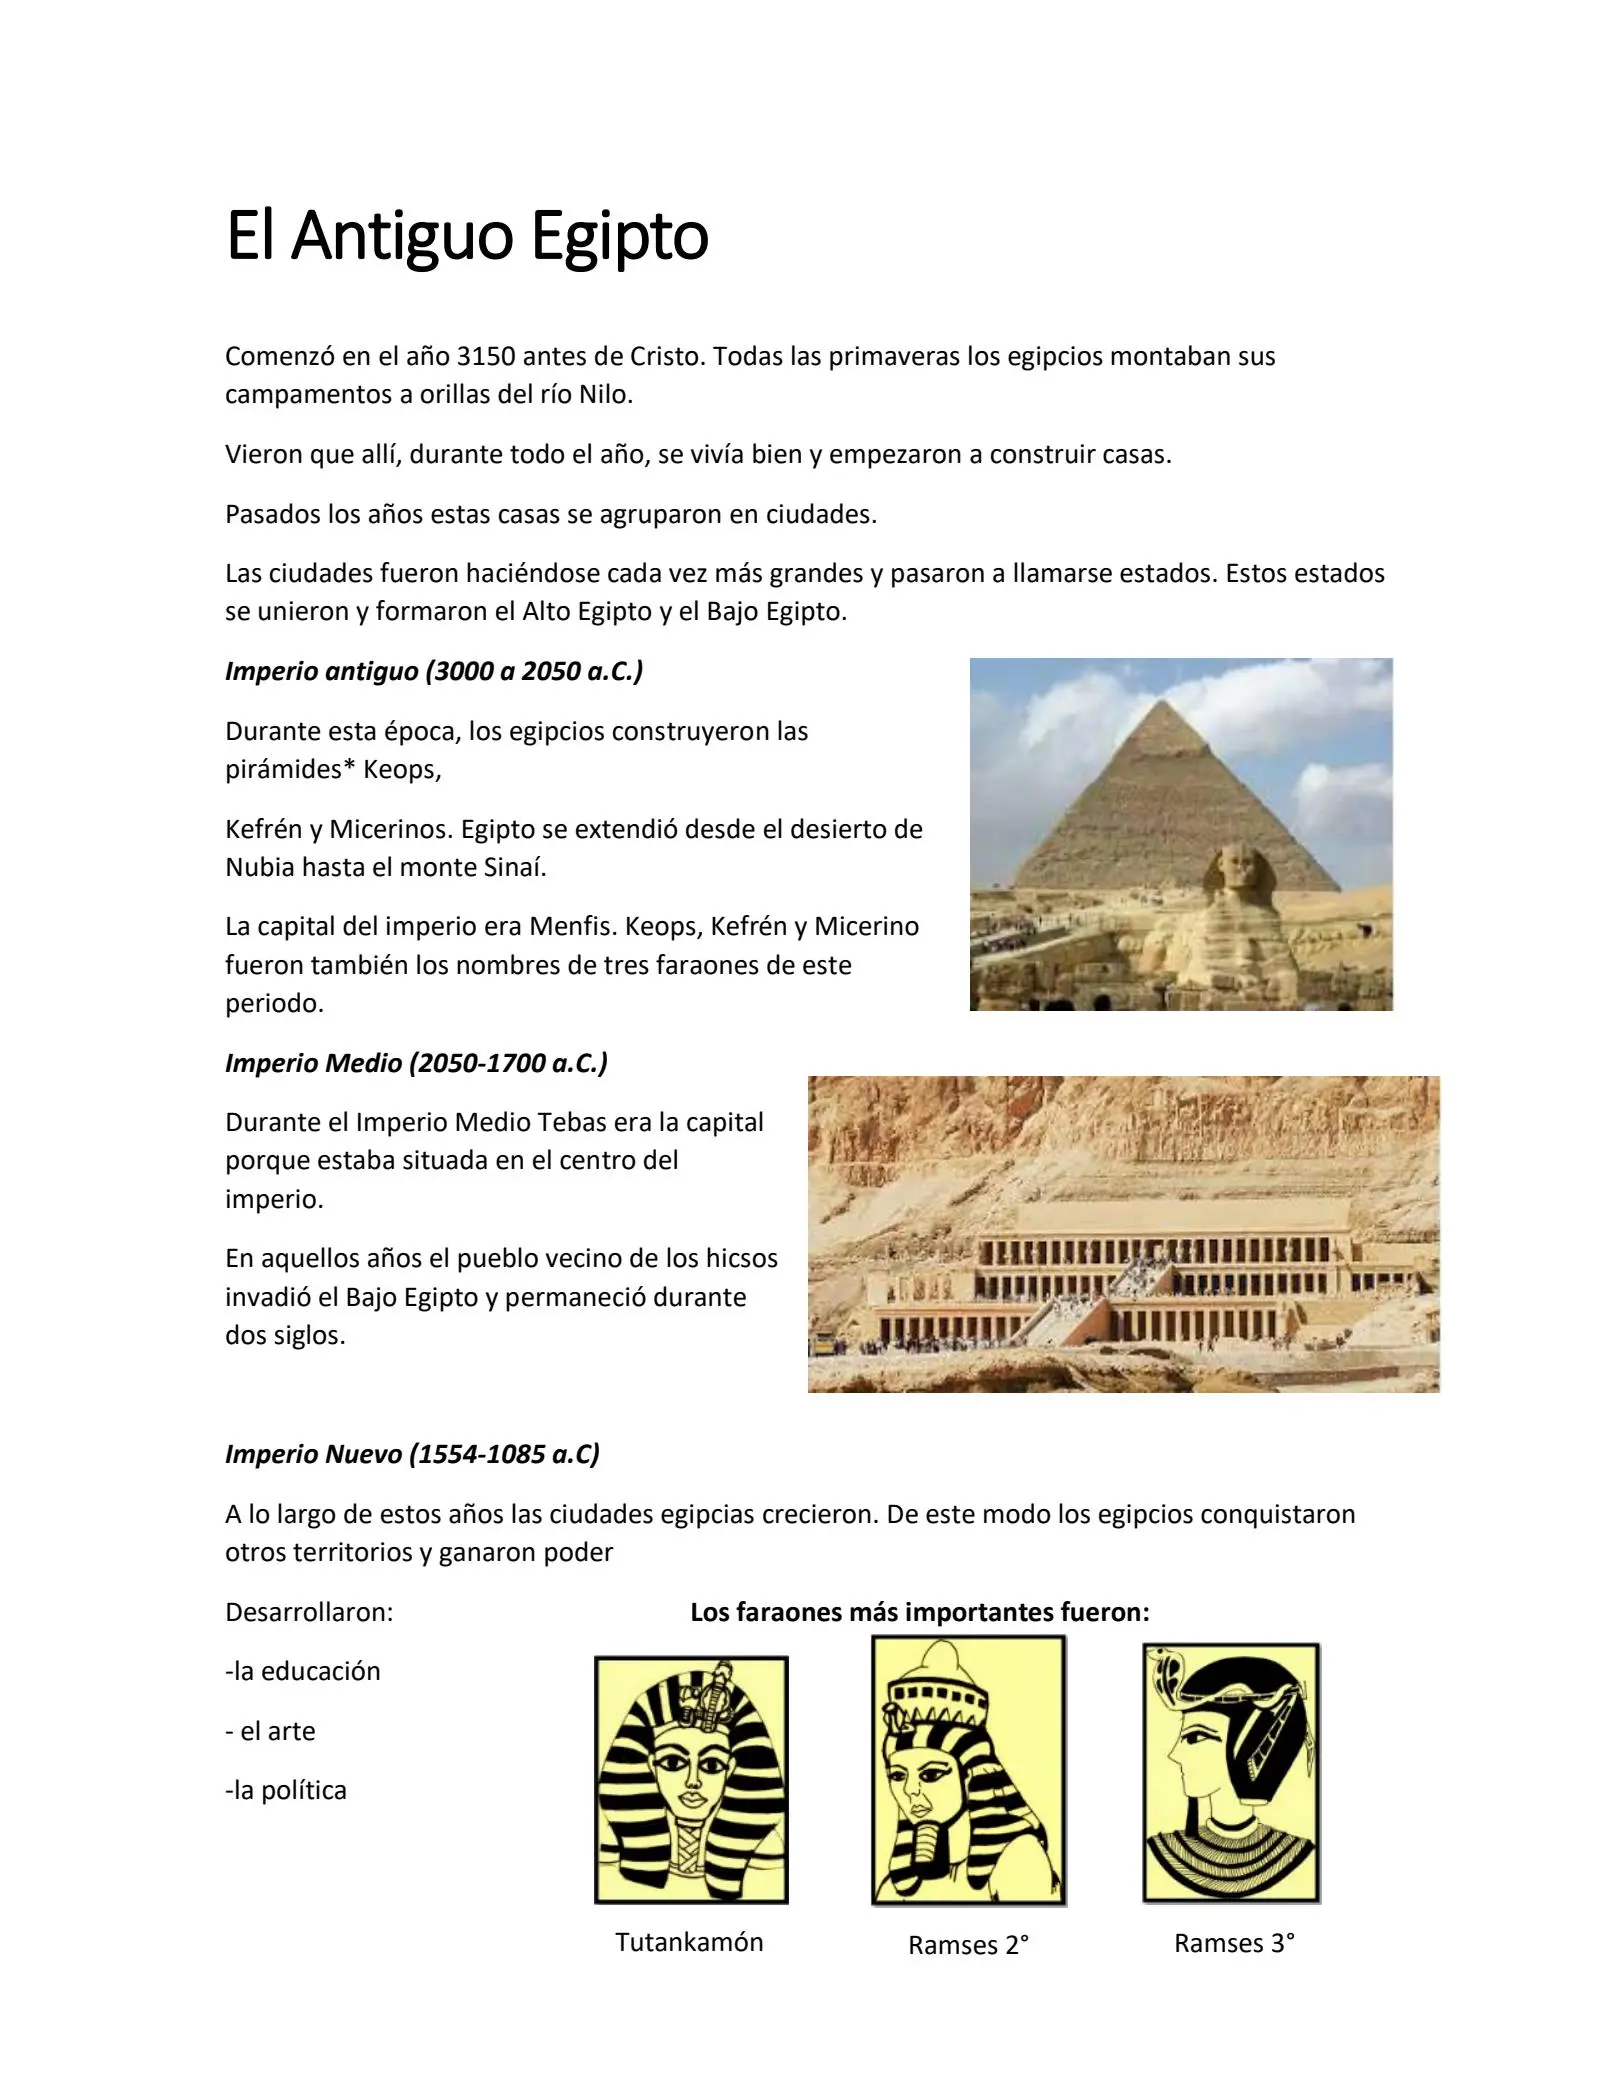 historia de egipto resumen - Cómo comienza la historia de Egipto